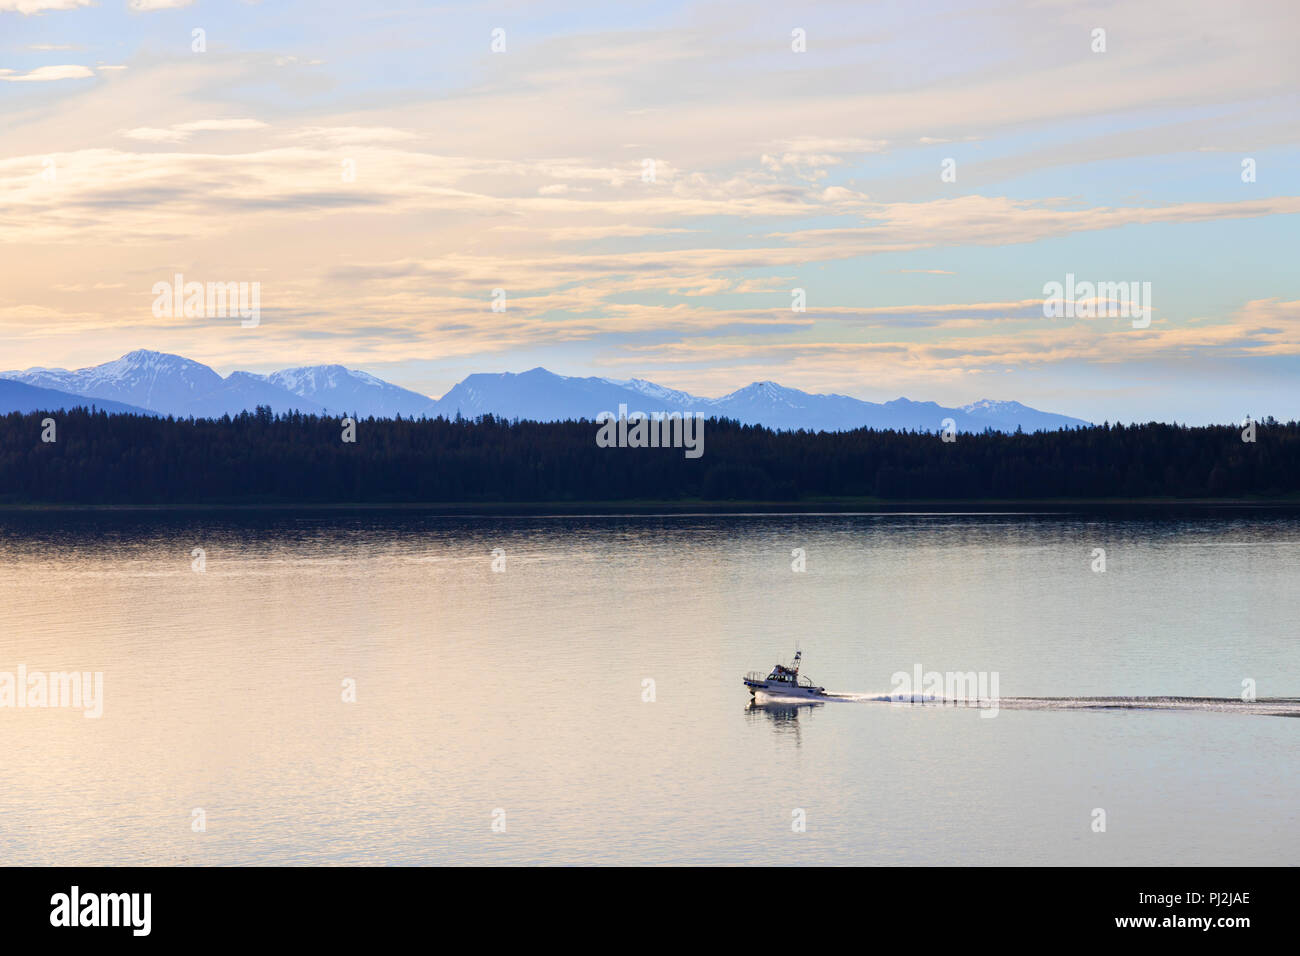 Lever de soleil à Icy Strait à l'entrée de Glacier Bay, Alaska, USA - Vue d'un bateau de croisière naviguant dans le passage de l'intérieur Banque D'Images